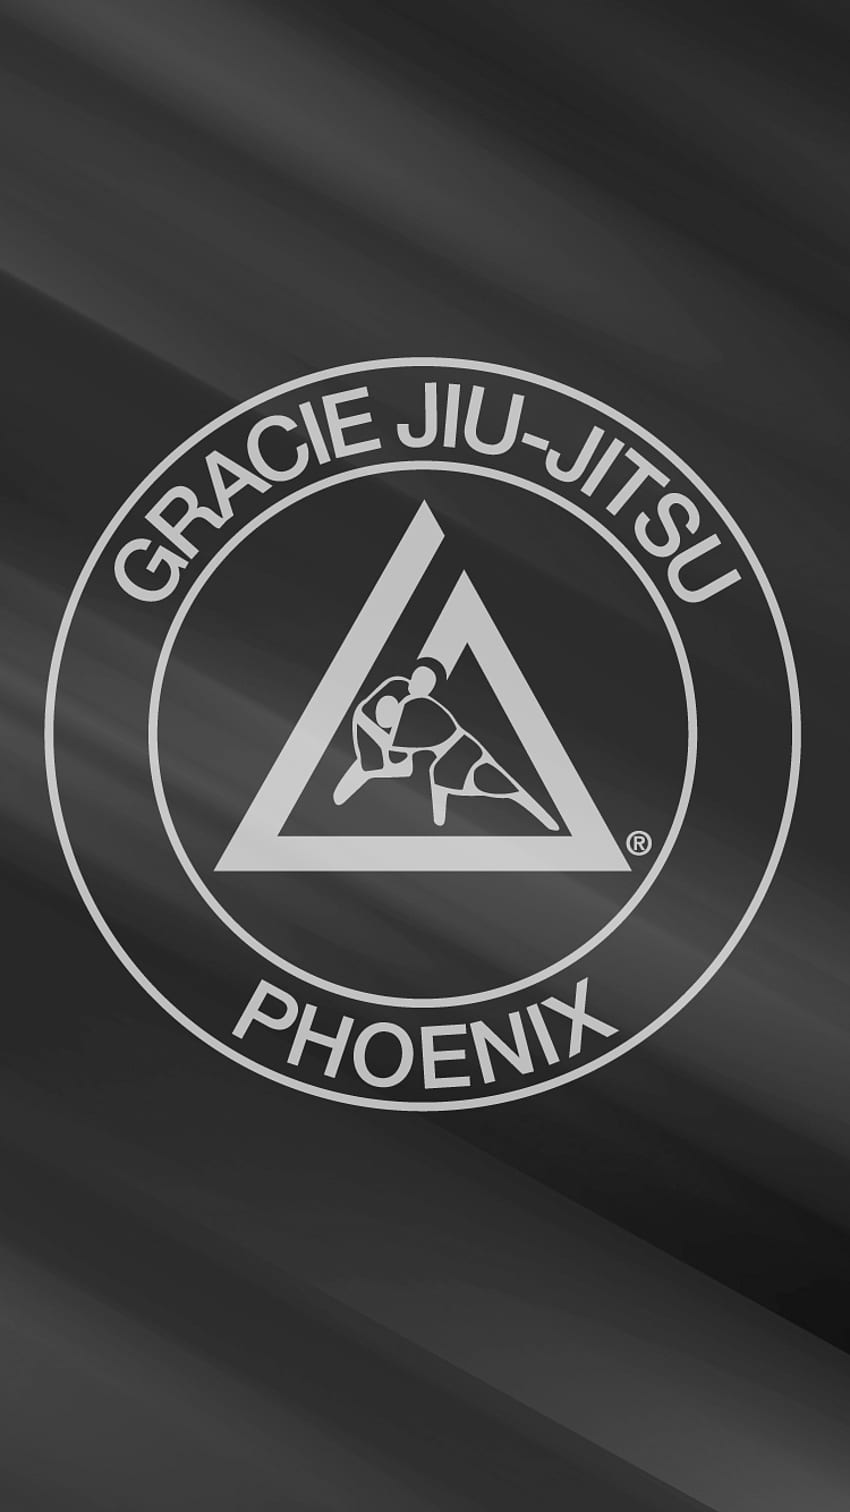 Gracie Jiu Jitsu Phoenix, Gracie Barra HD phone wallpaper